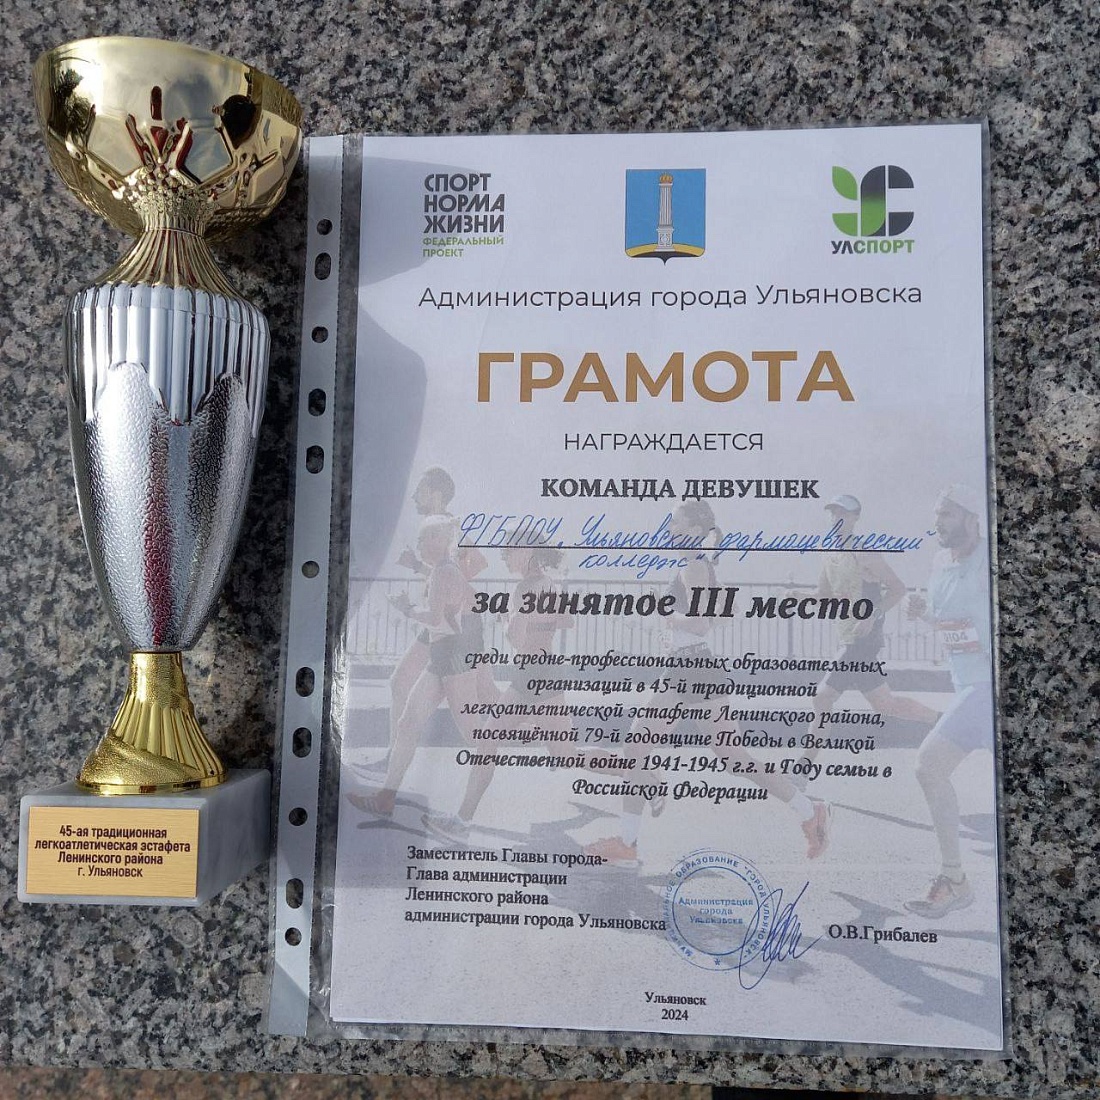 45 - й традиционная легкоатлетическая эстафета Ленинского района Третье место!